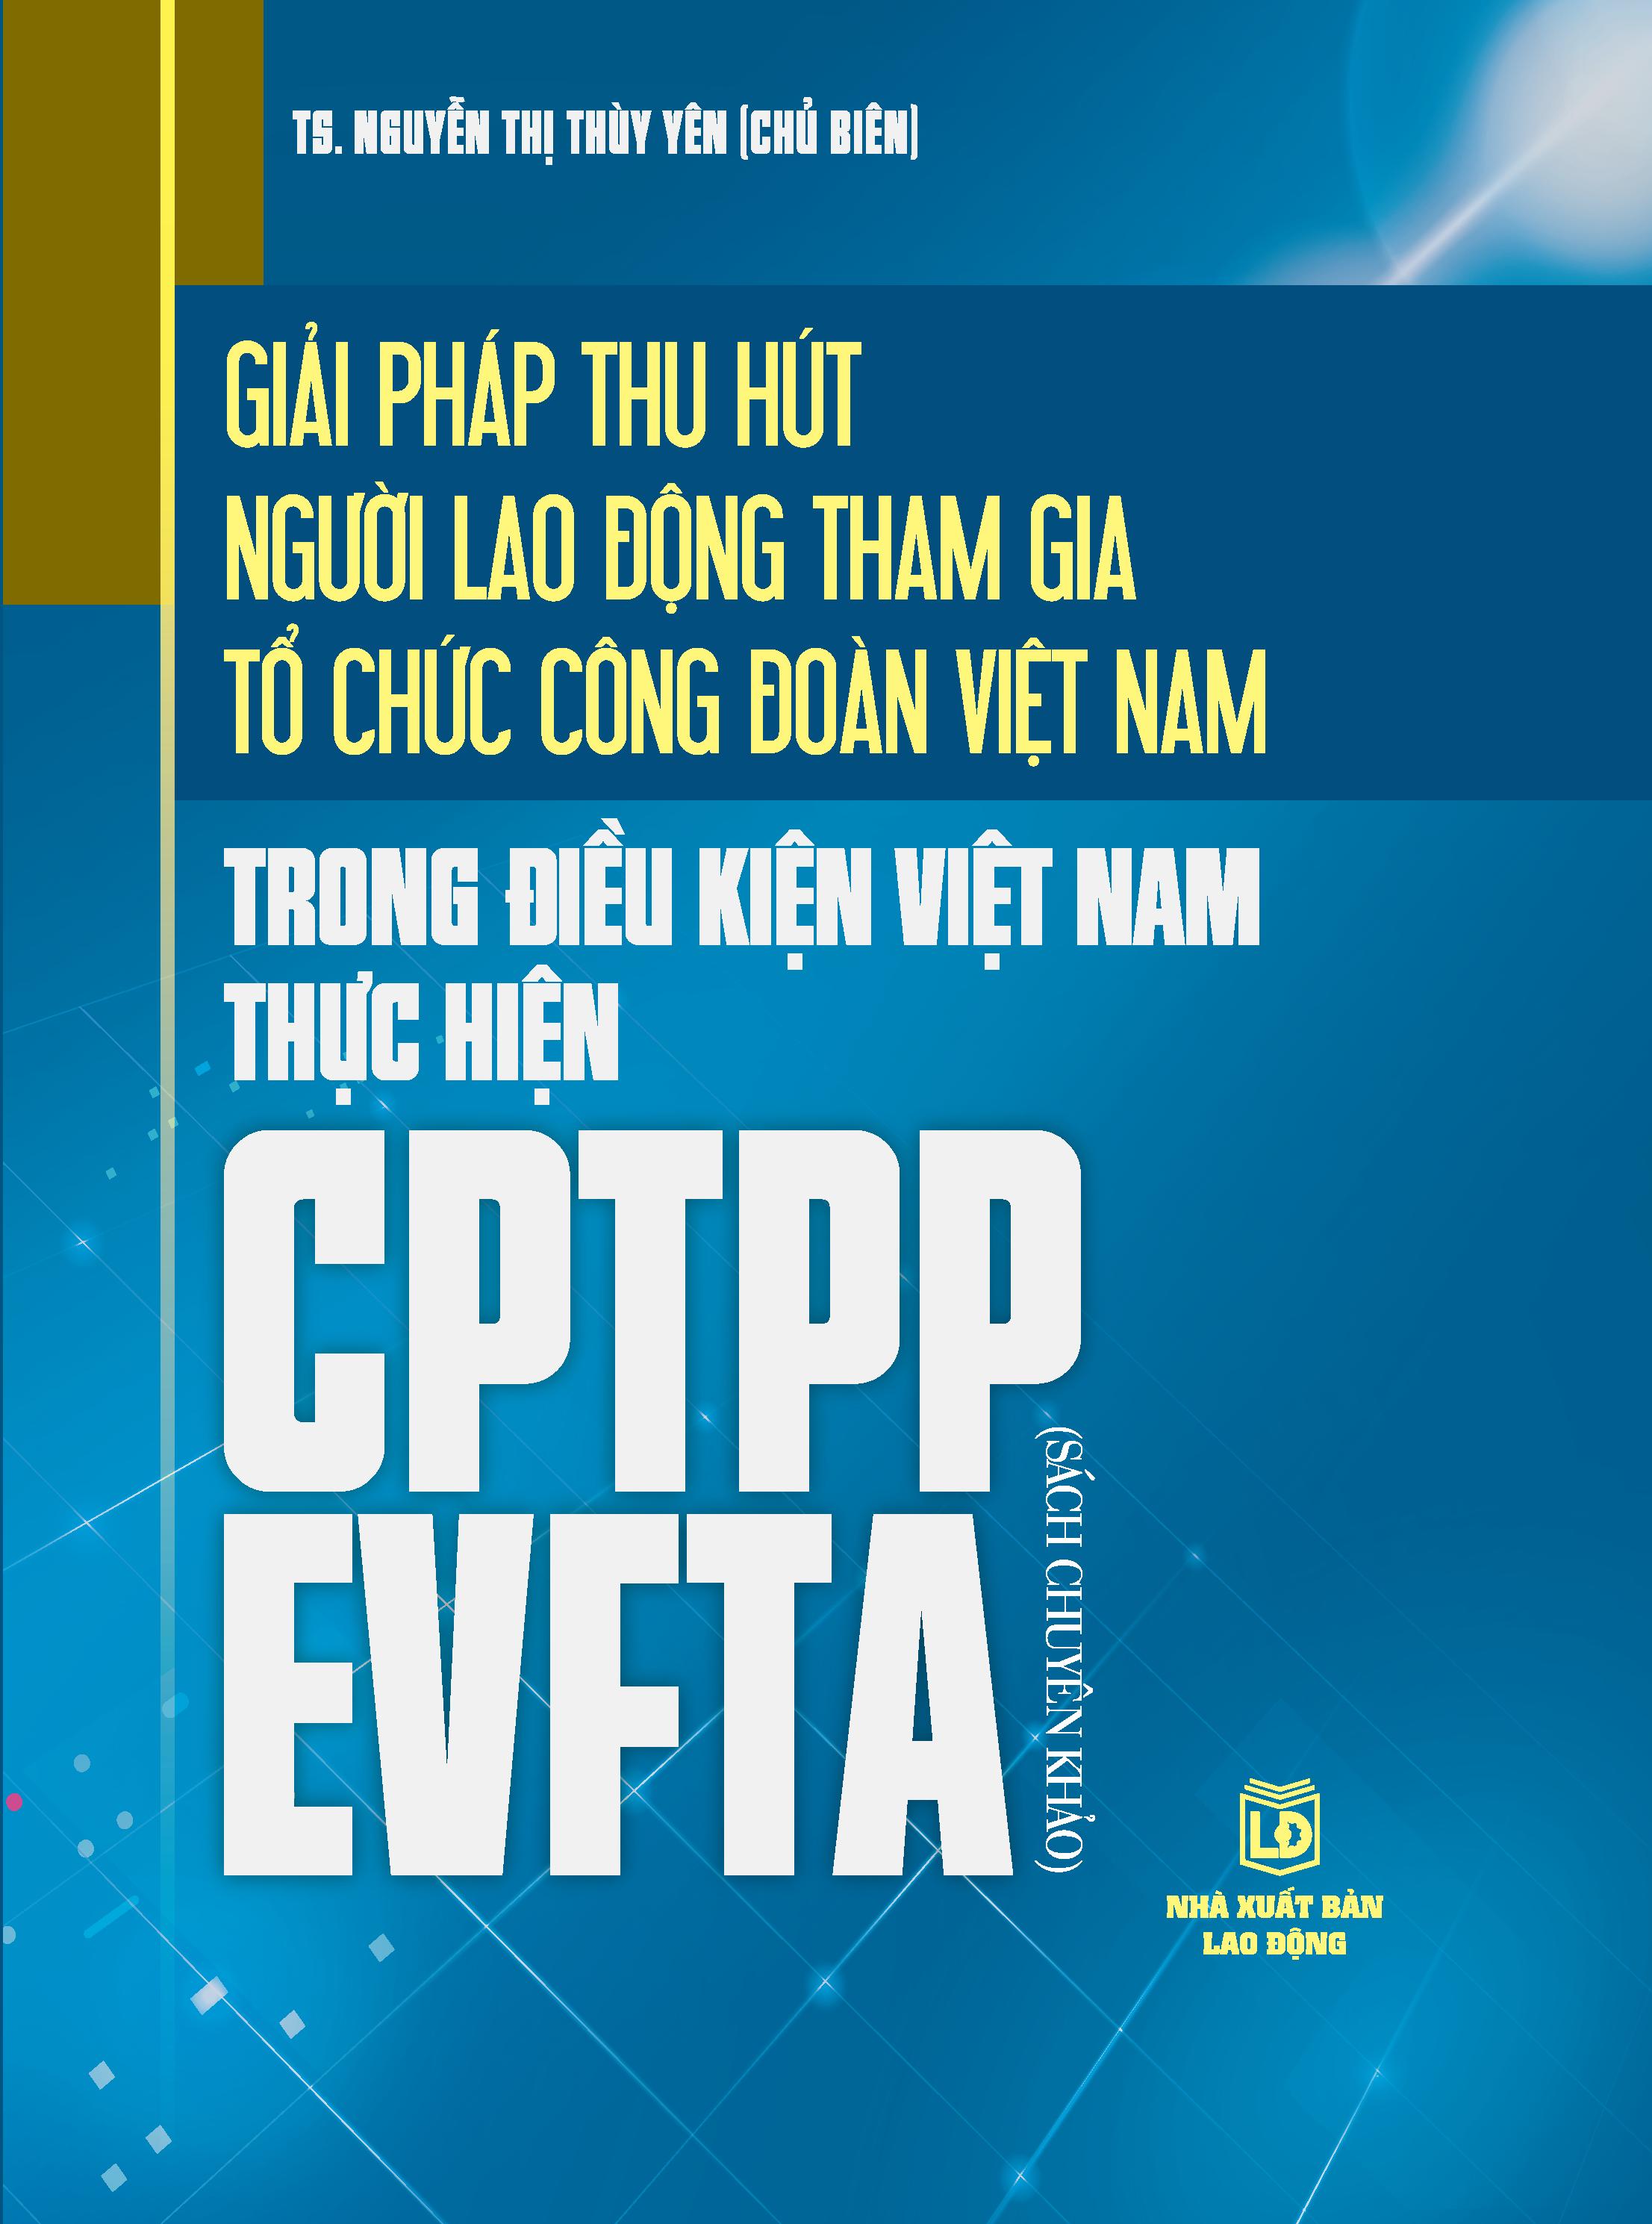 Giải pháp thu hút người lao động tham gia tổ chức công đoàn Việt Nam trong điều kiện Việt Nam thực hiện CPTPP EVFTA (Sách chuyên khảo)